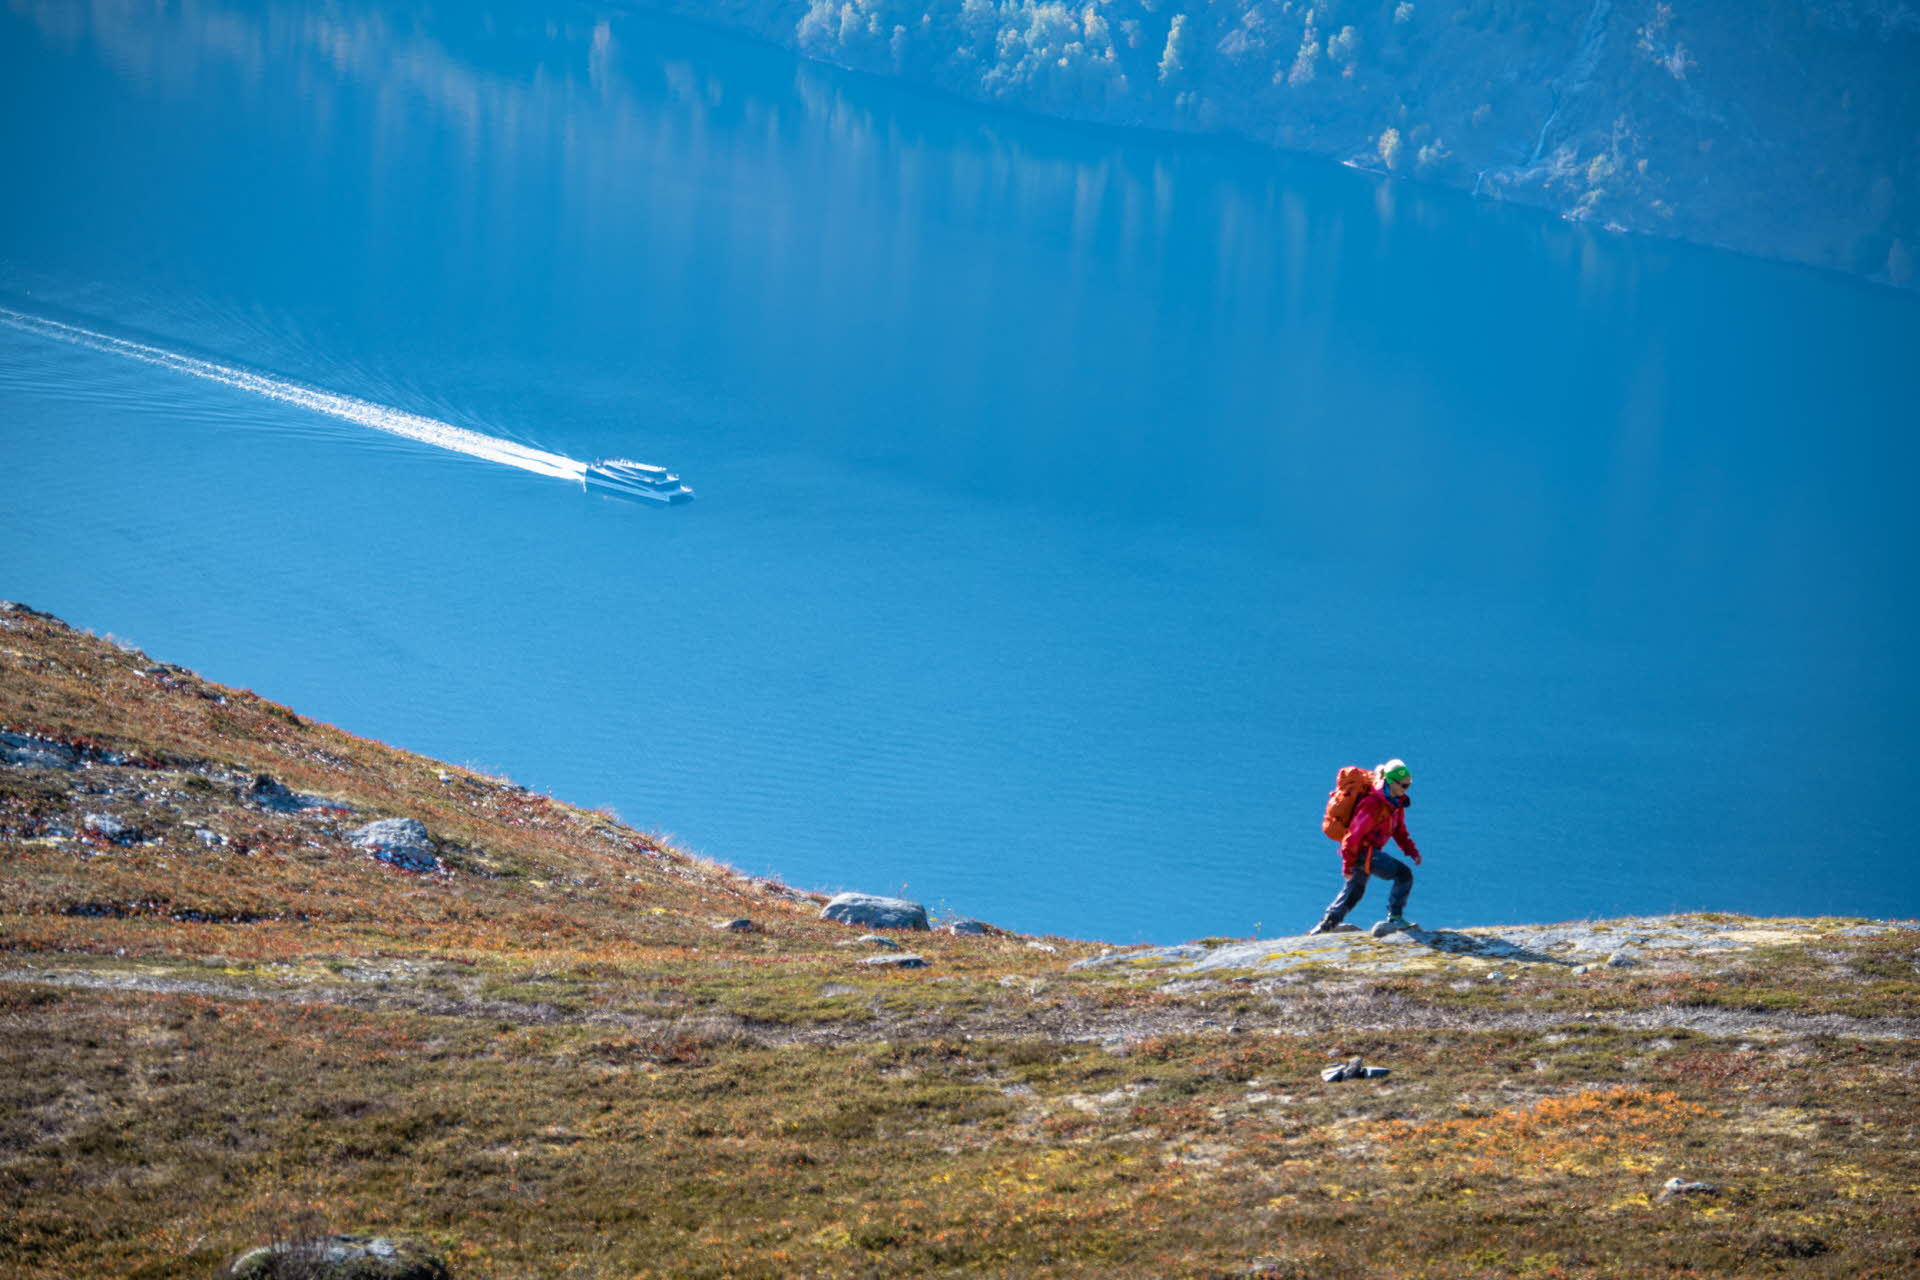 一个穿着红色夹克、背着背包的女子在艾于兰峡湾 (Aurlandsfjord) 上爬山。一艘船在峡湾航行。